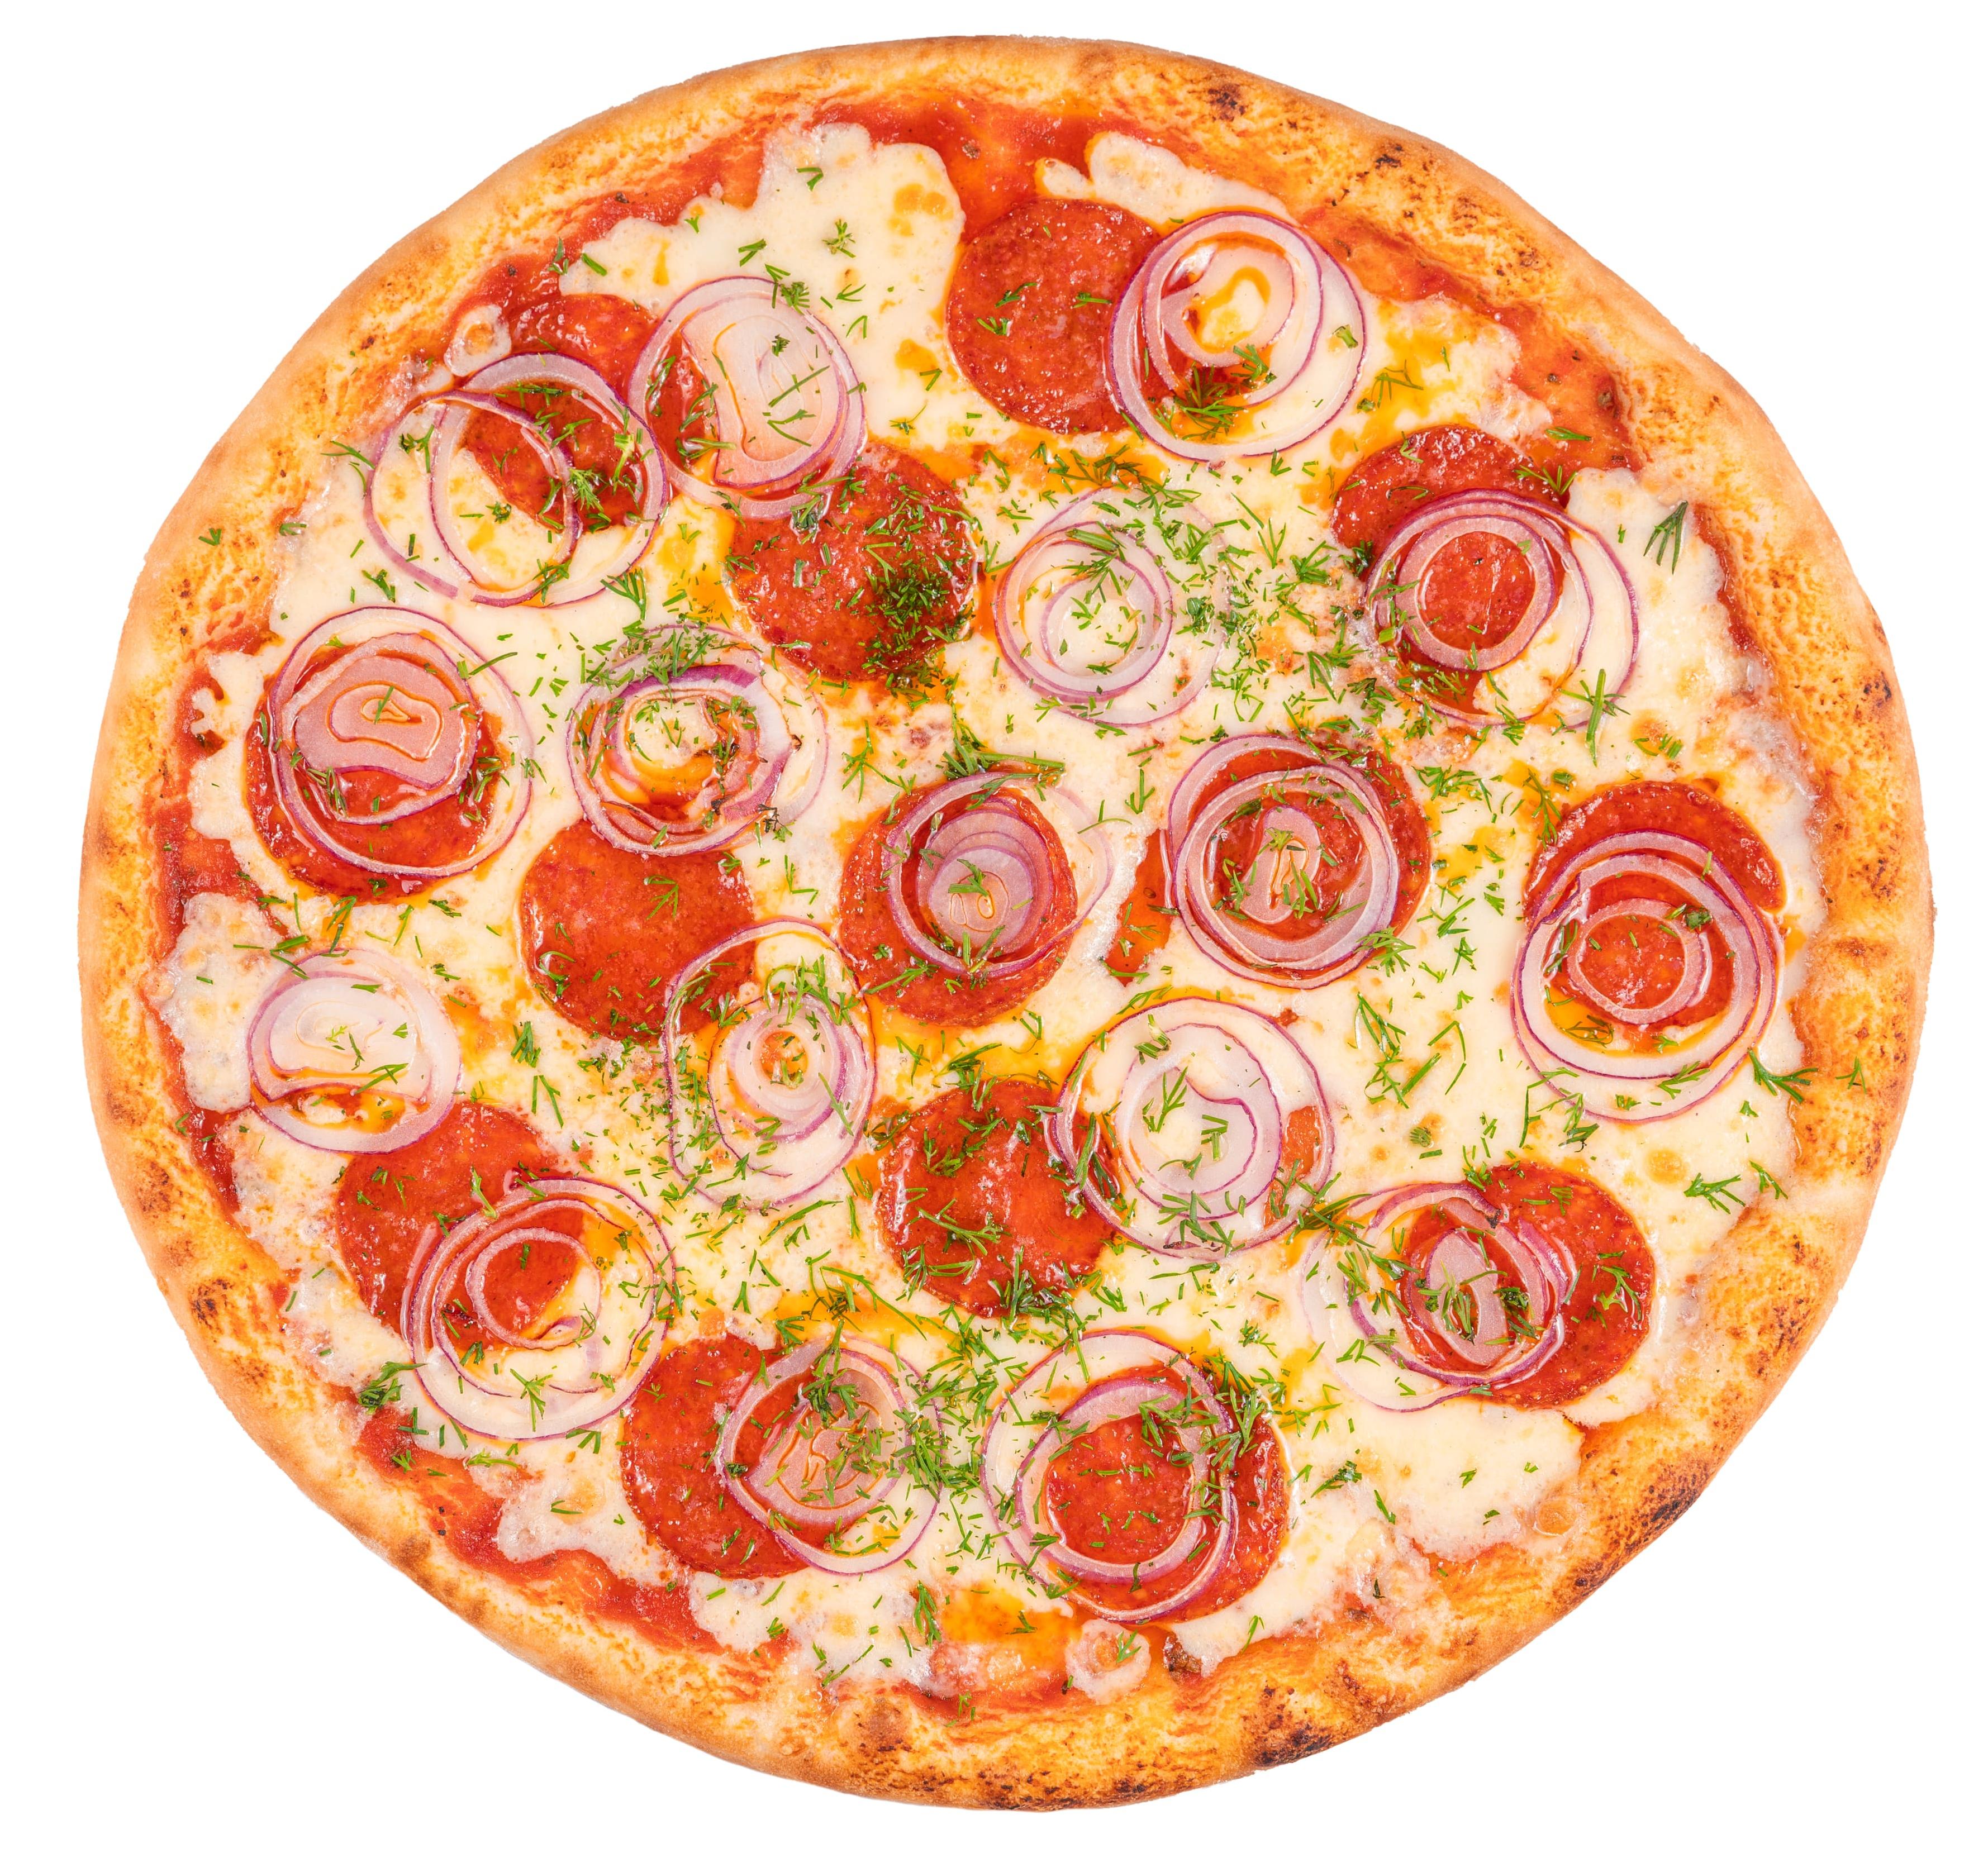 состав начинки пиццы пепперони фото 65